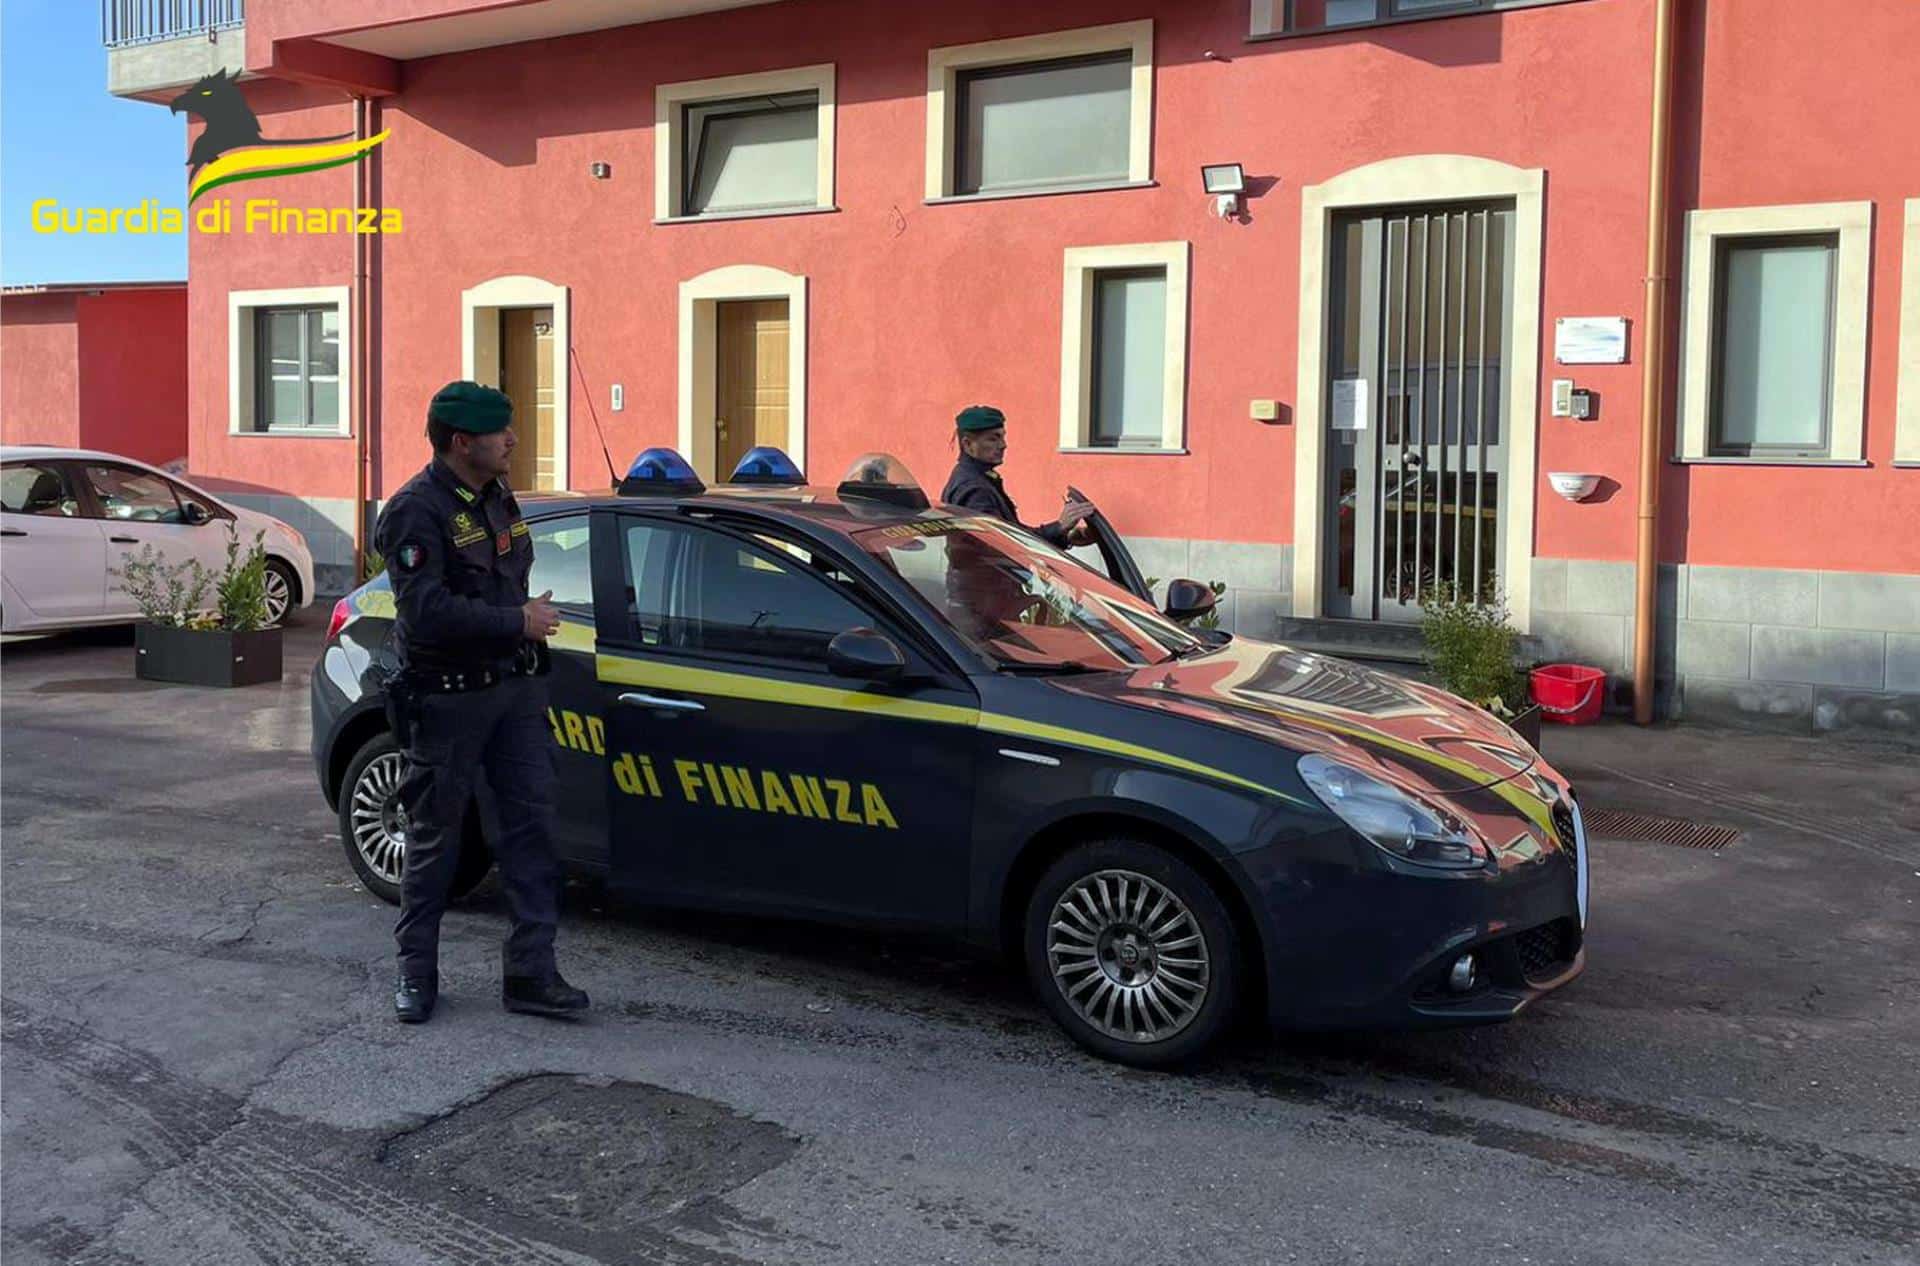 Raccolta rifiuti, quattro arresti a Catania: sequestro di 4,5 milioni di euro